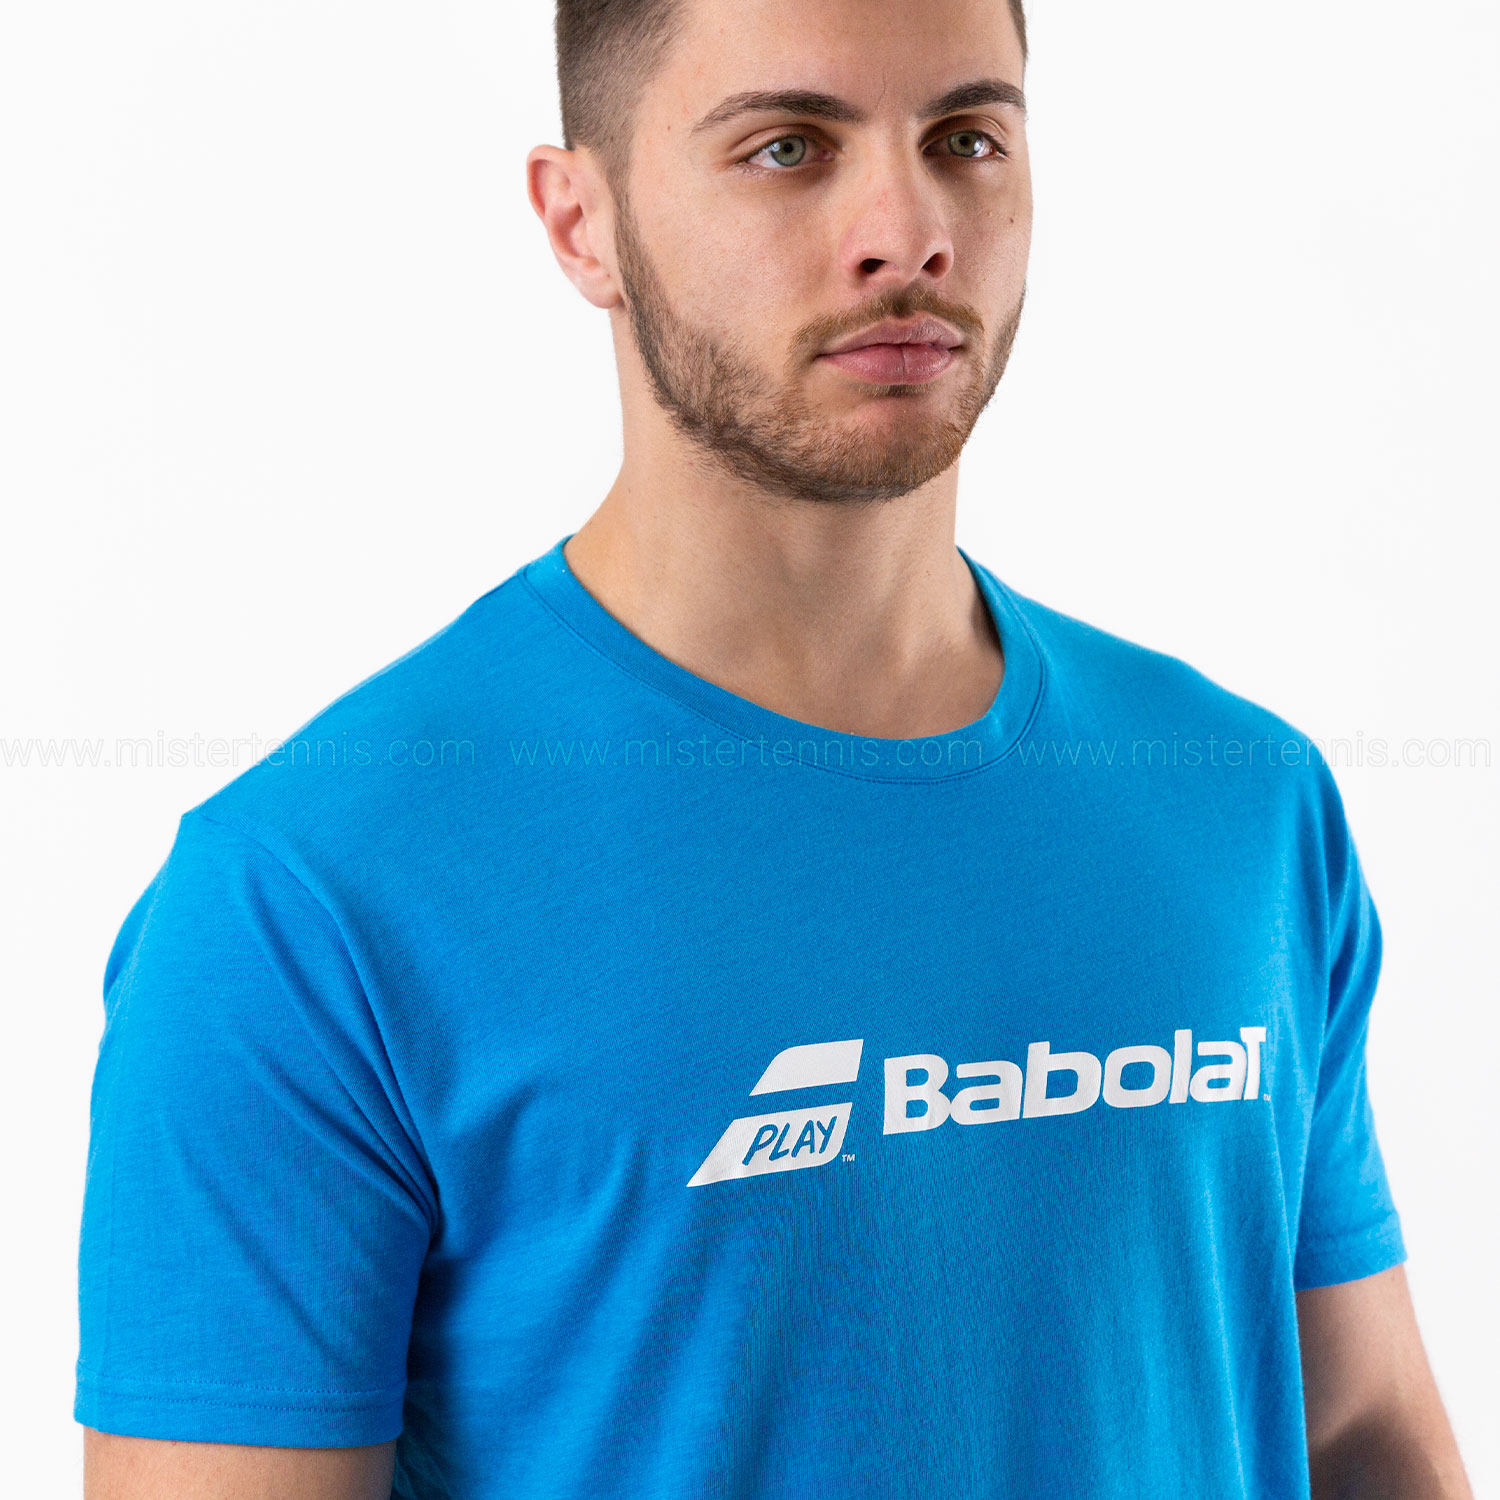 Babolat Exercise Camiseta - Blue Aster Heather